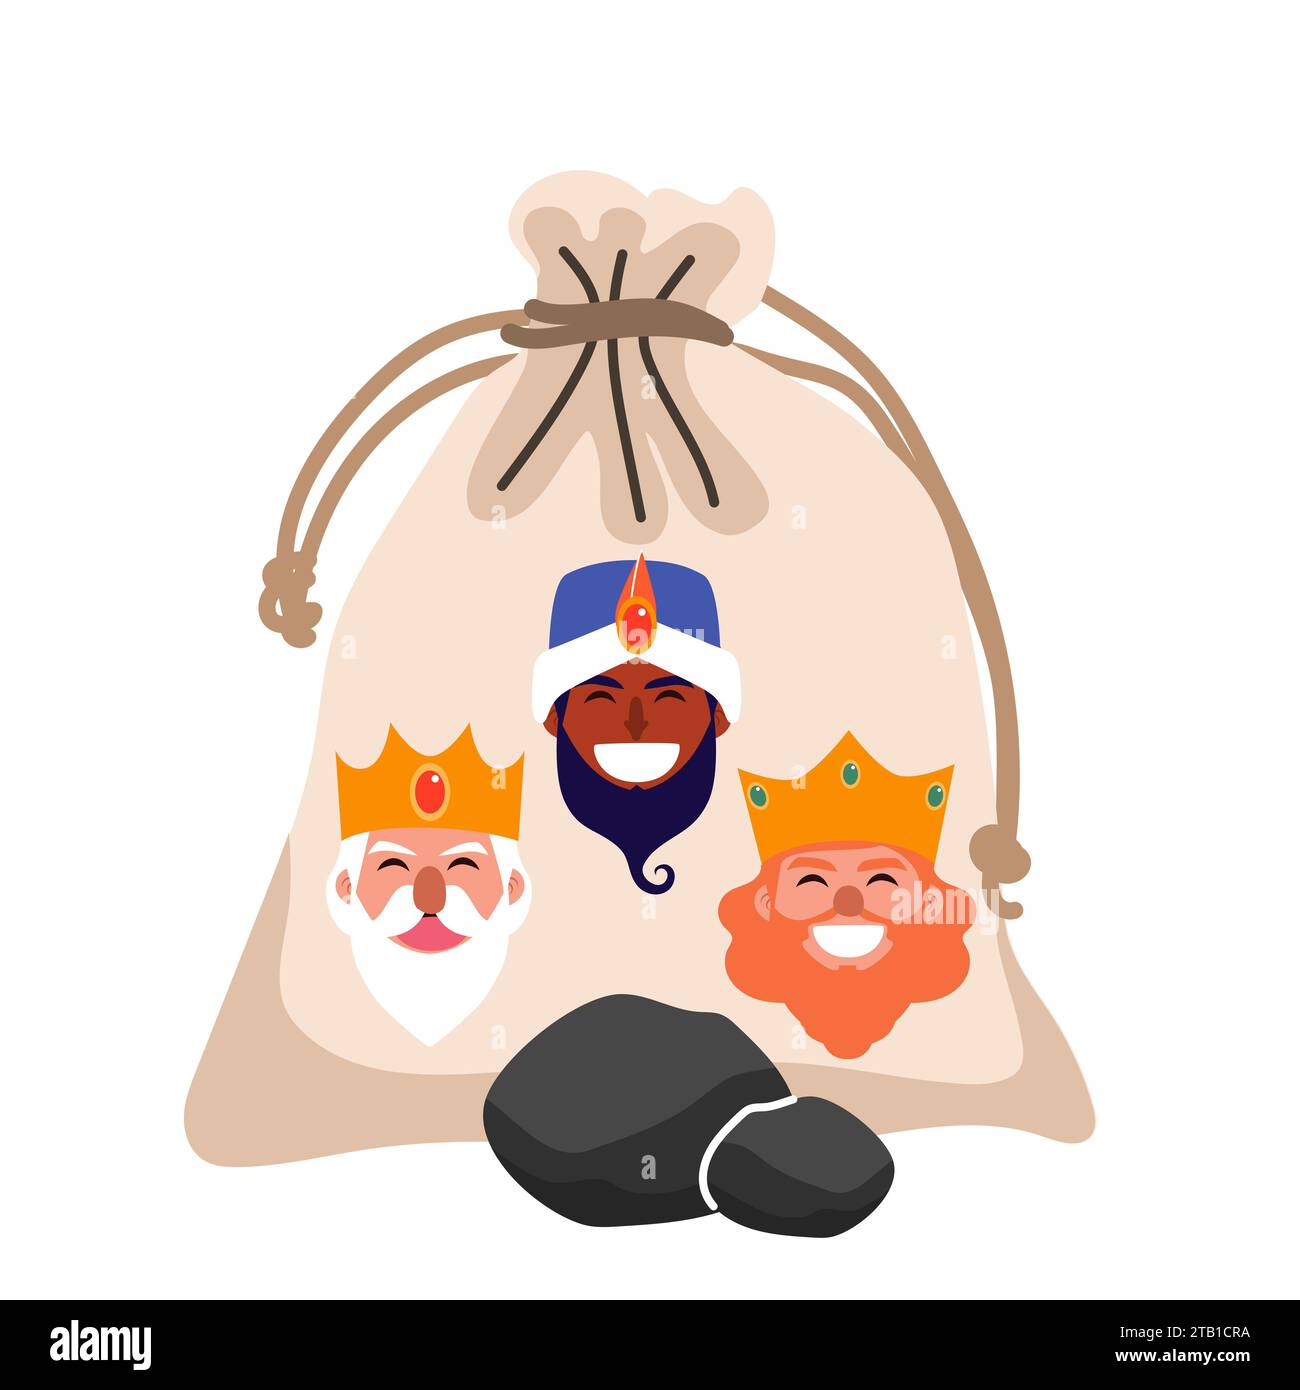 Illustrazione del sacco a carbone con tre avatar Wise Men. Regalo per il disegno vettoriale dei bambini cattivi Foto Stock